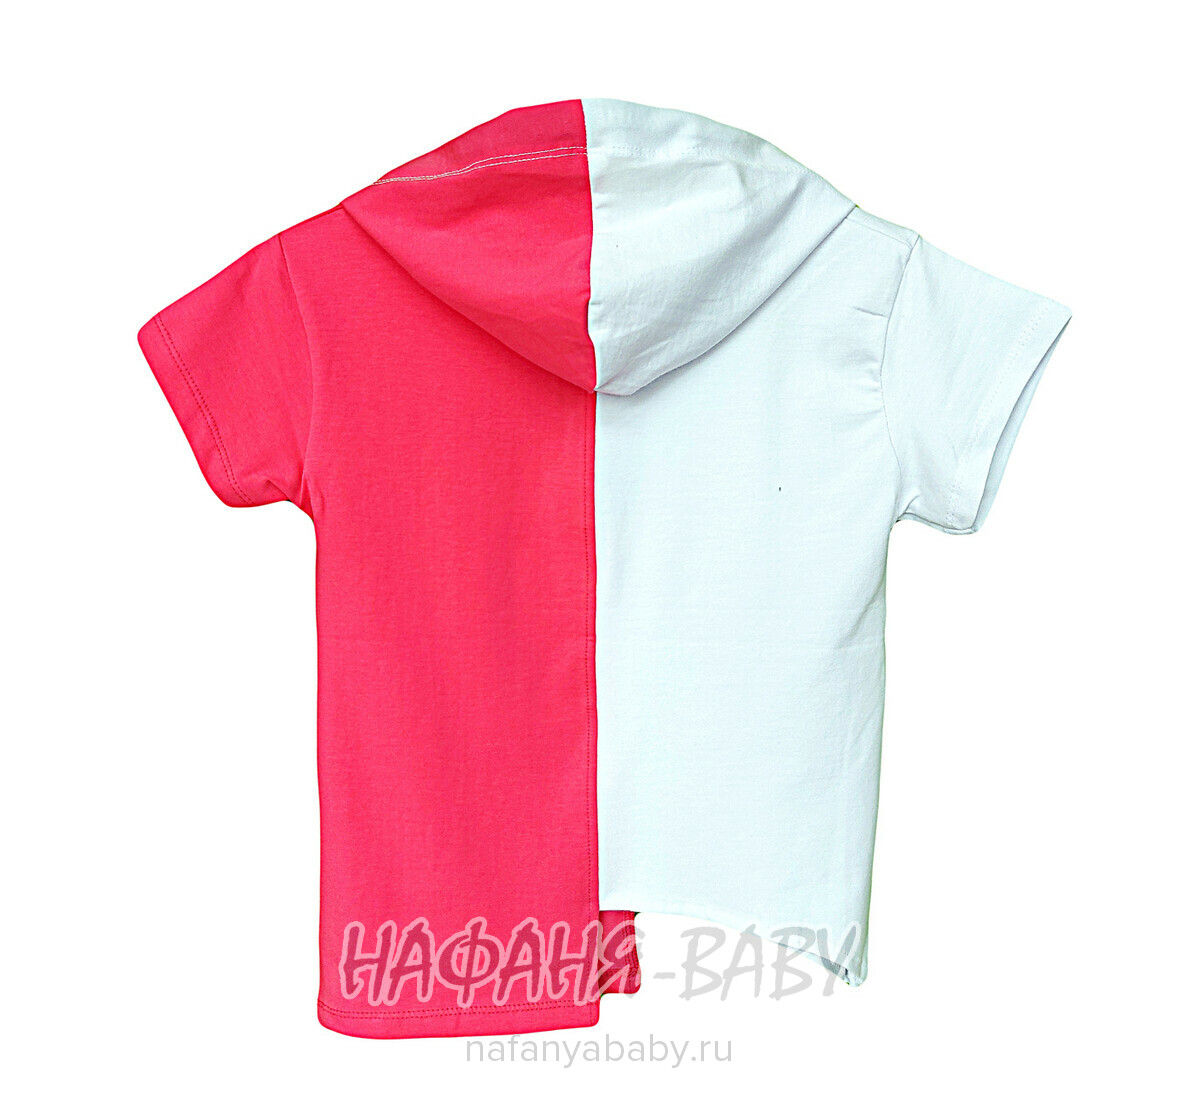 Подростковая футболка с капюшоном TOONTOY, купить в интернет магазине Нафаня. арт: 10701.